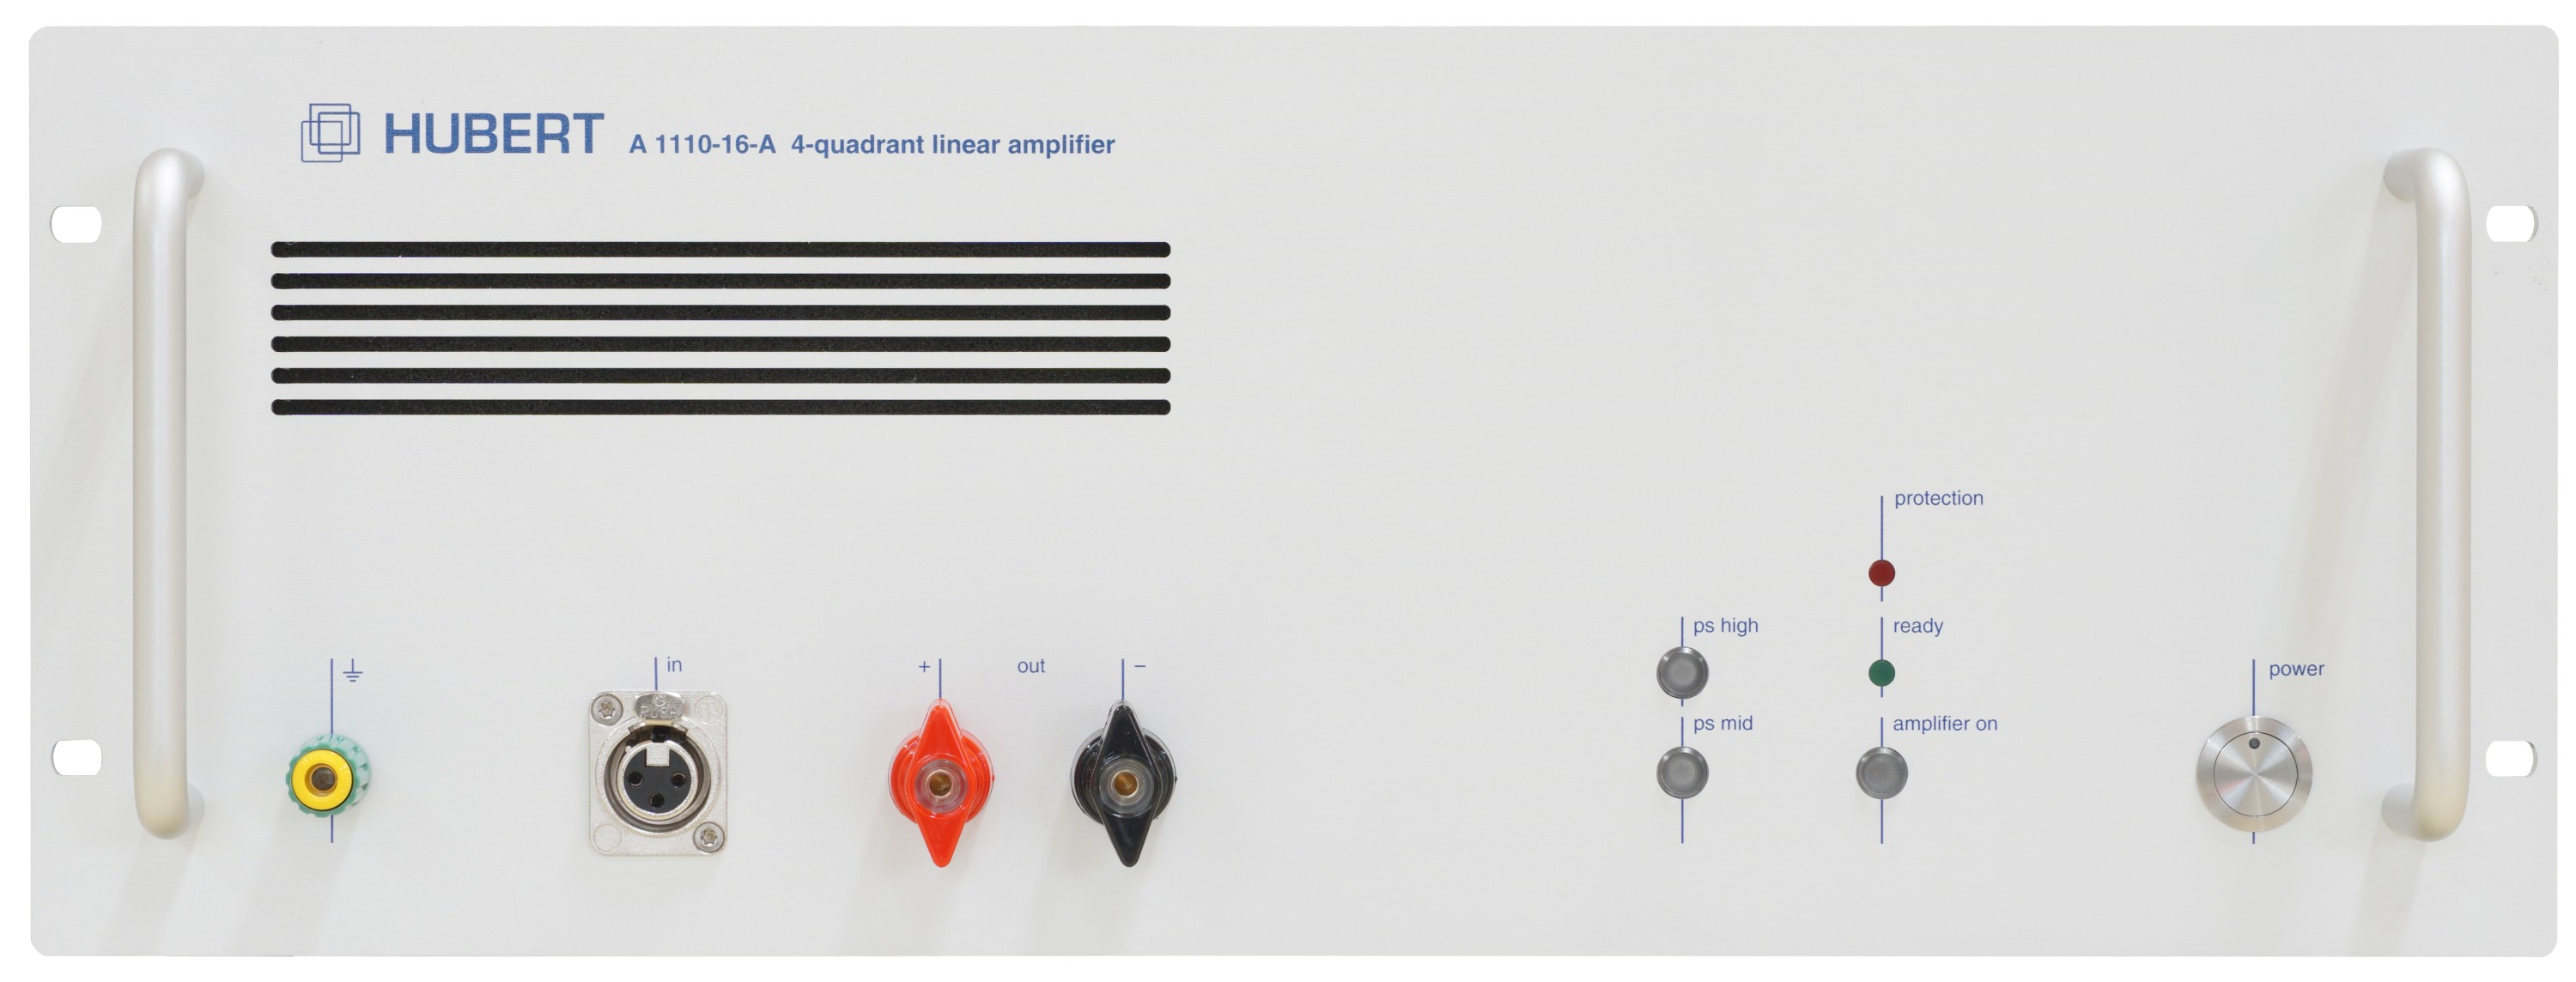 HUBERT A 1110-16-A linear amplifier